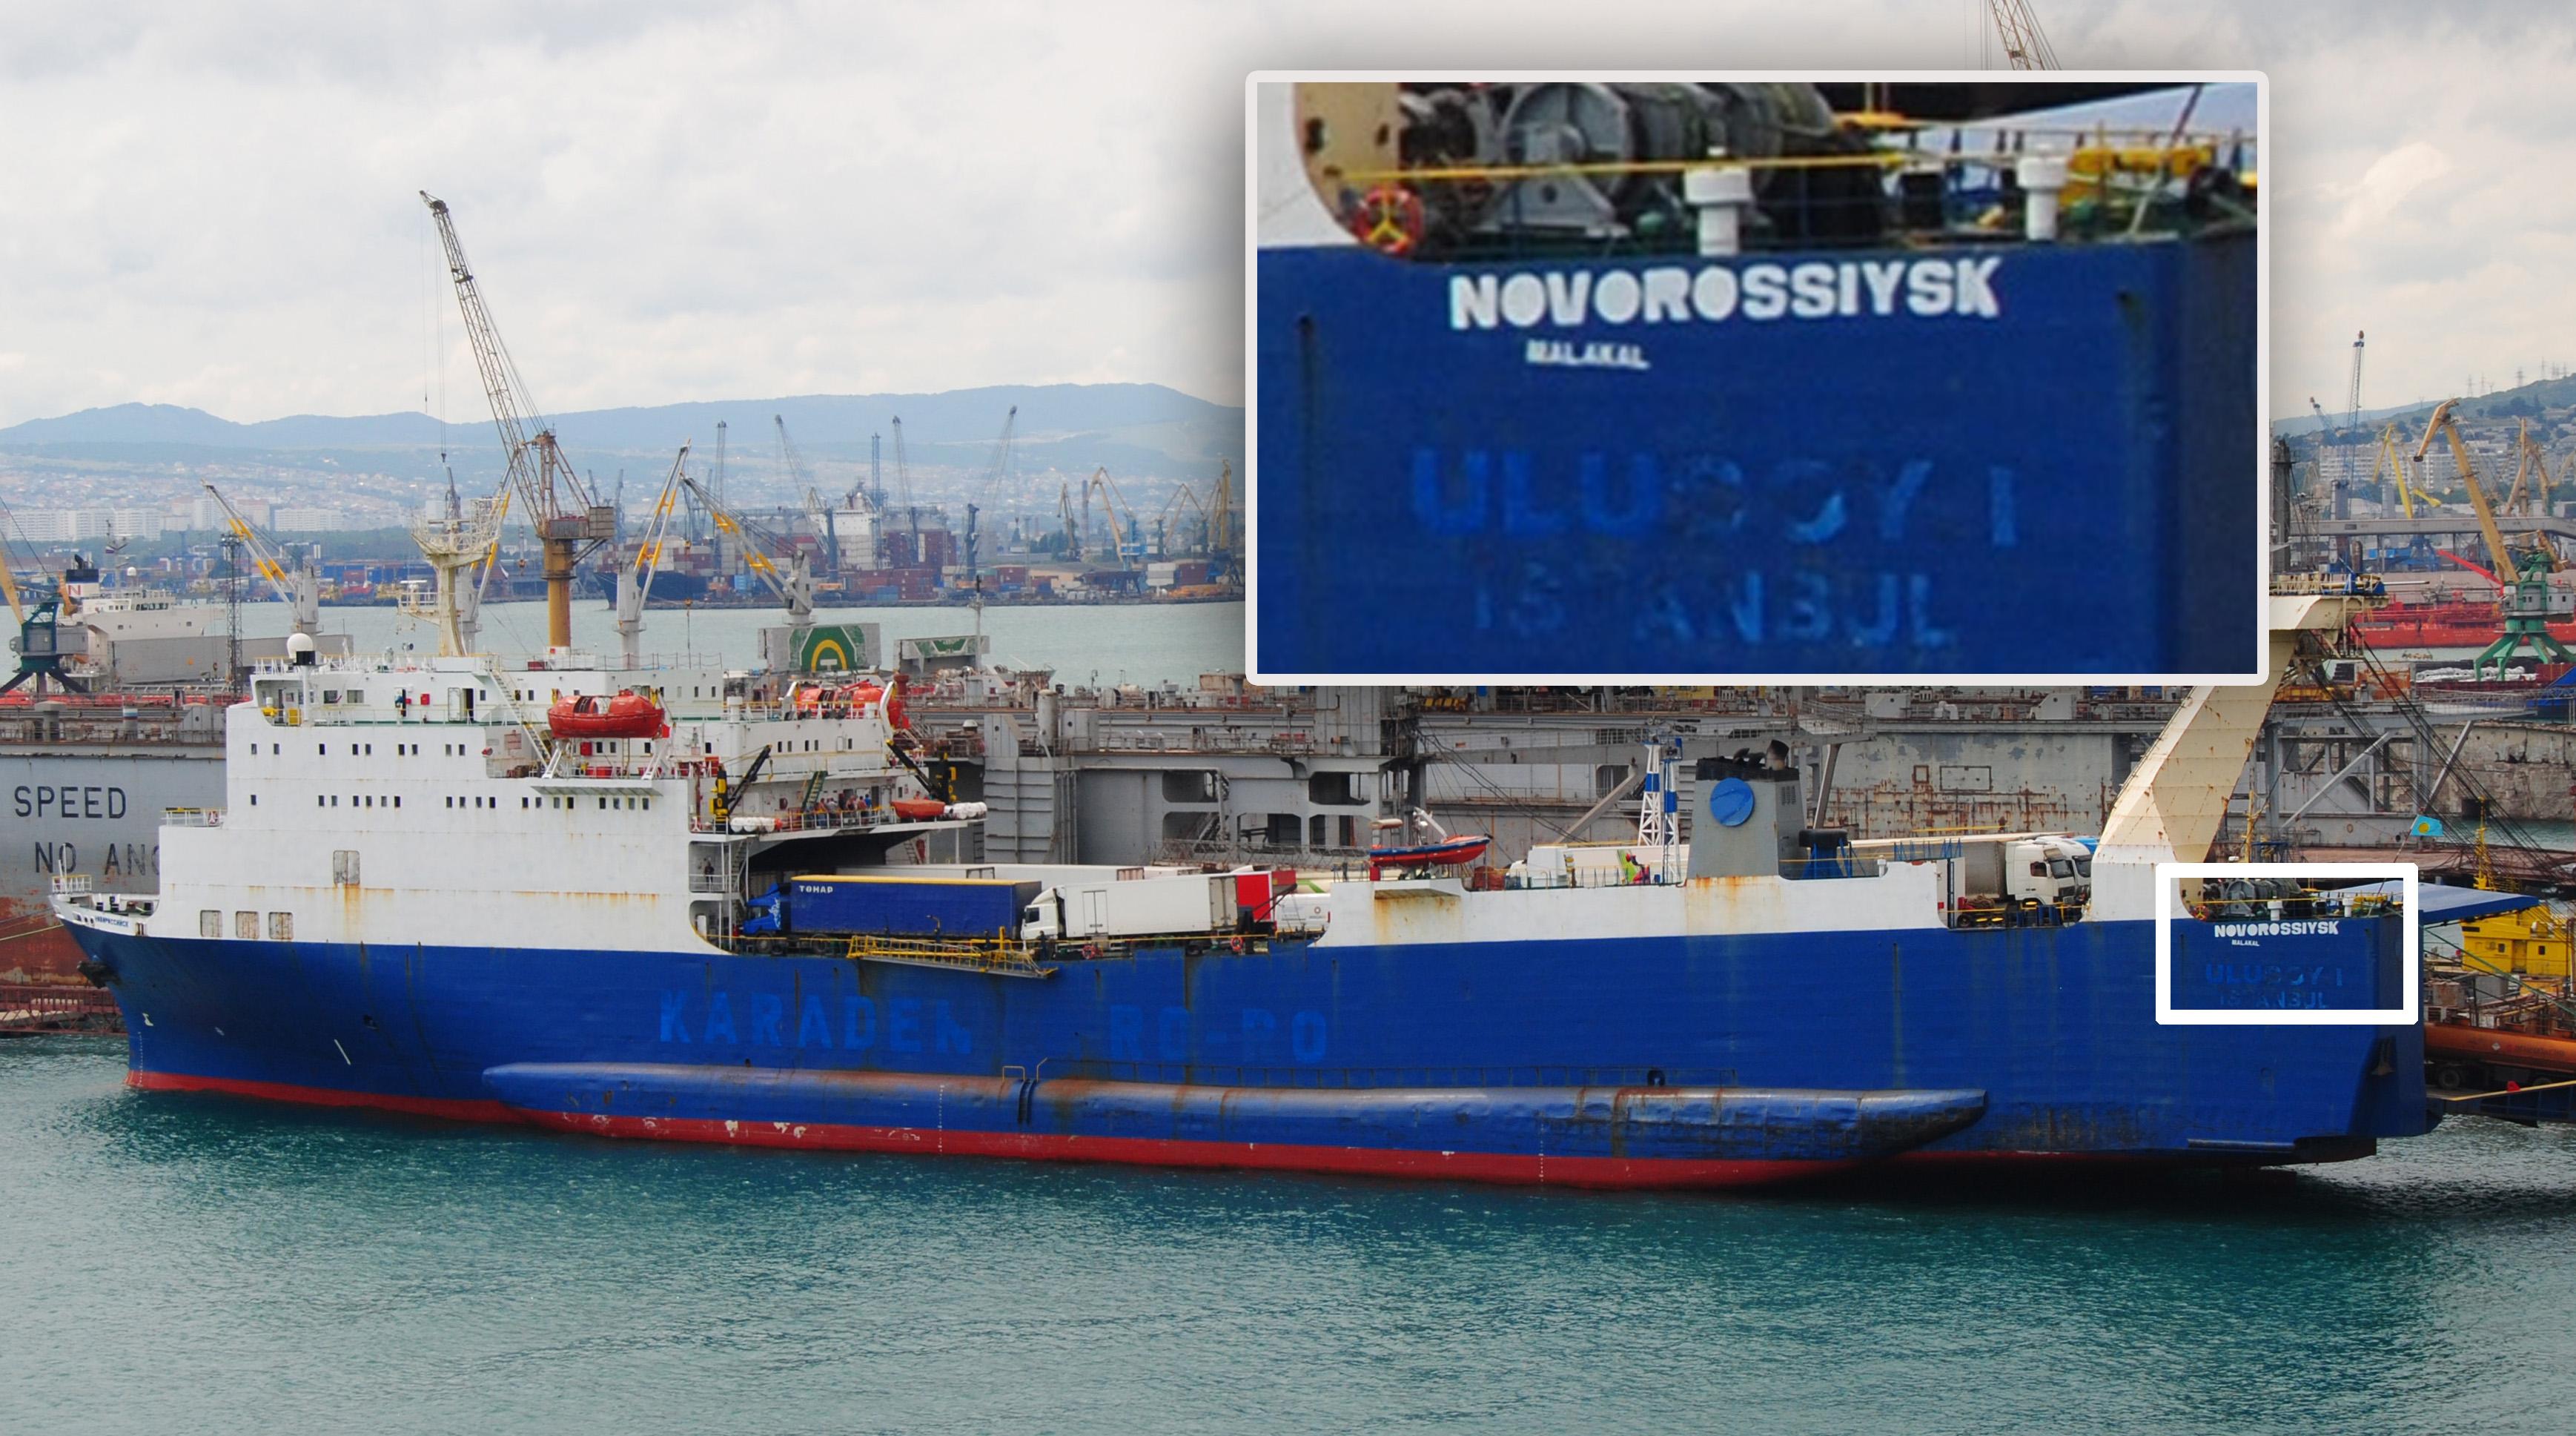 Le "Novorossiysk" photographié dans le port de la ville du même nom. [shipspotting.com / Bengt-Rune Inberg]